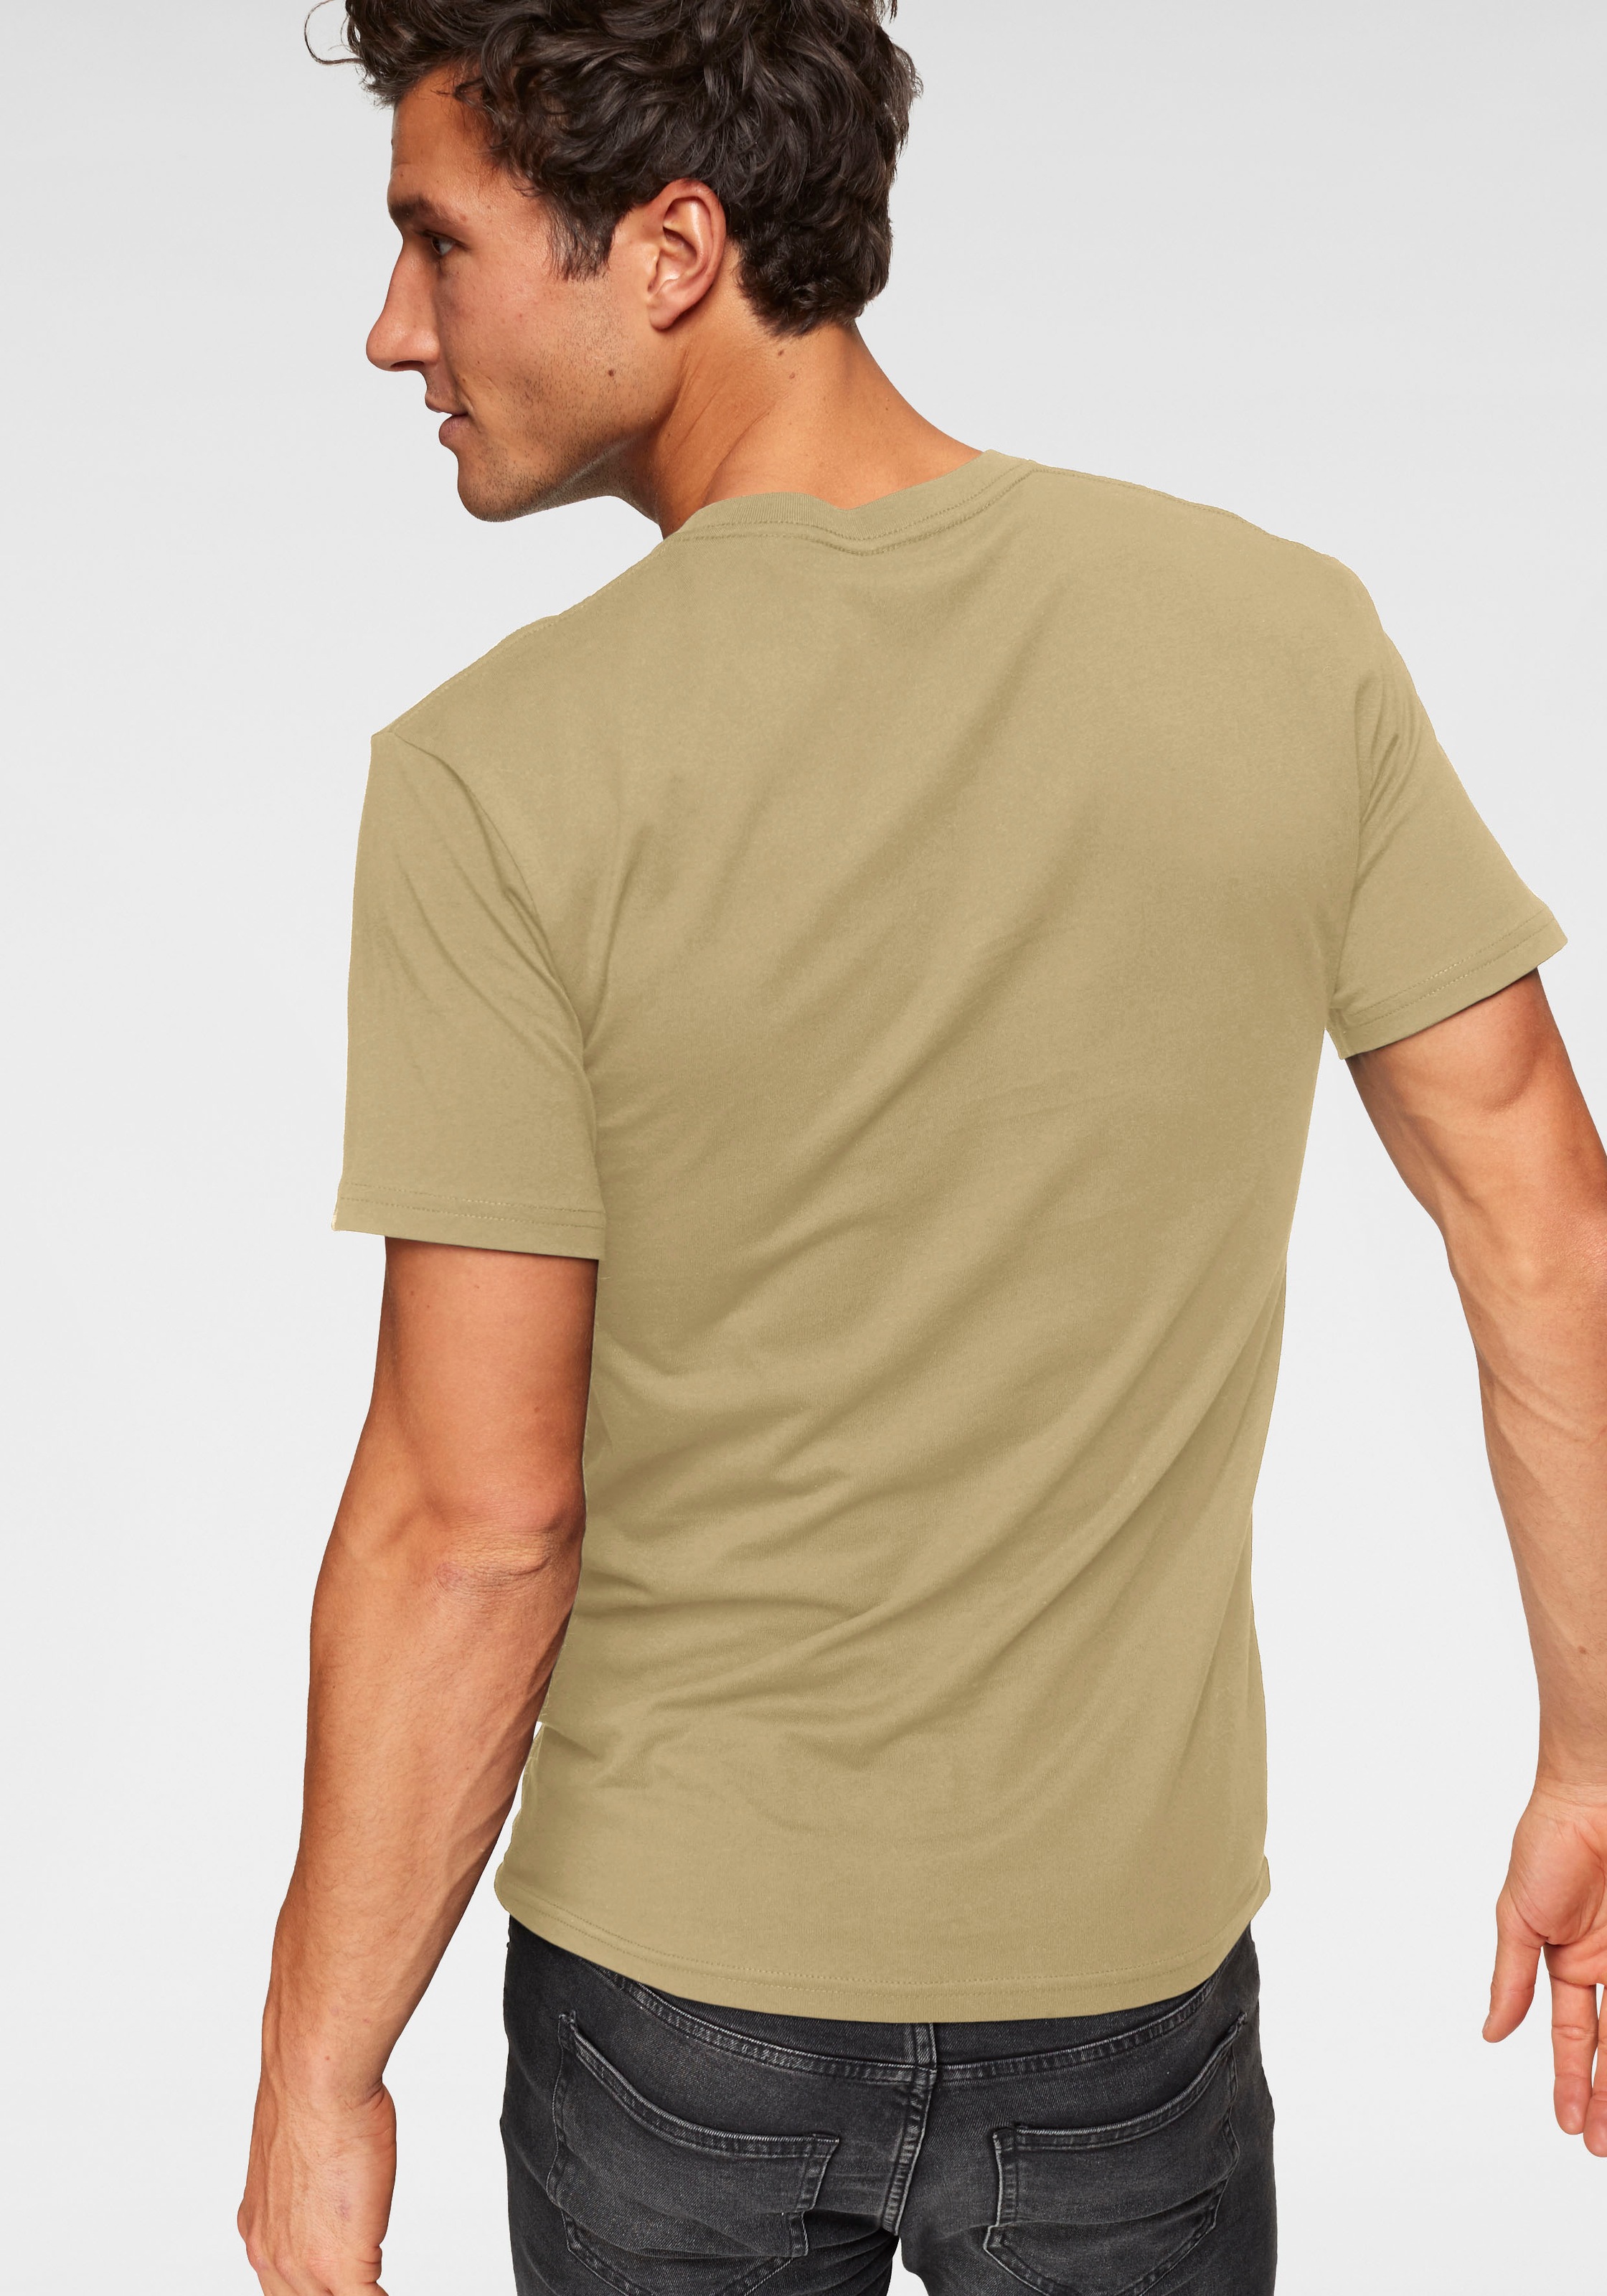 ➤ Shirts versandkostenfrei - kaufen ohne Mindestbestellwert